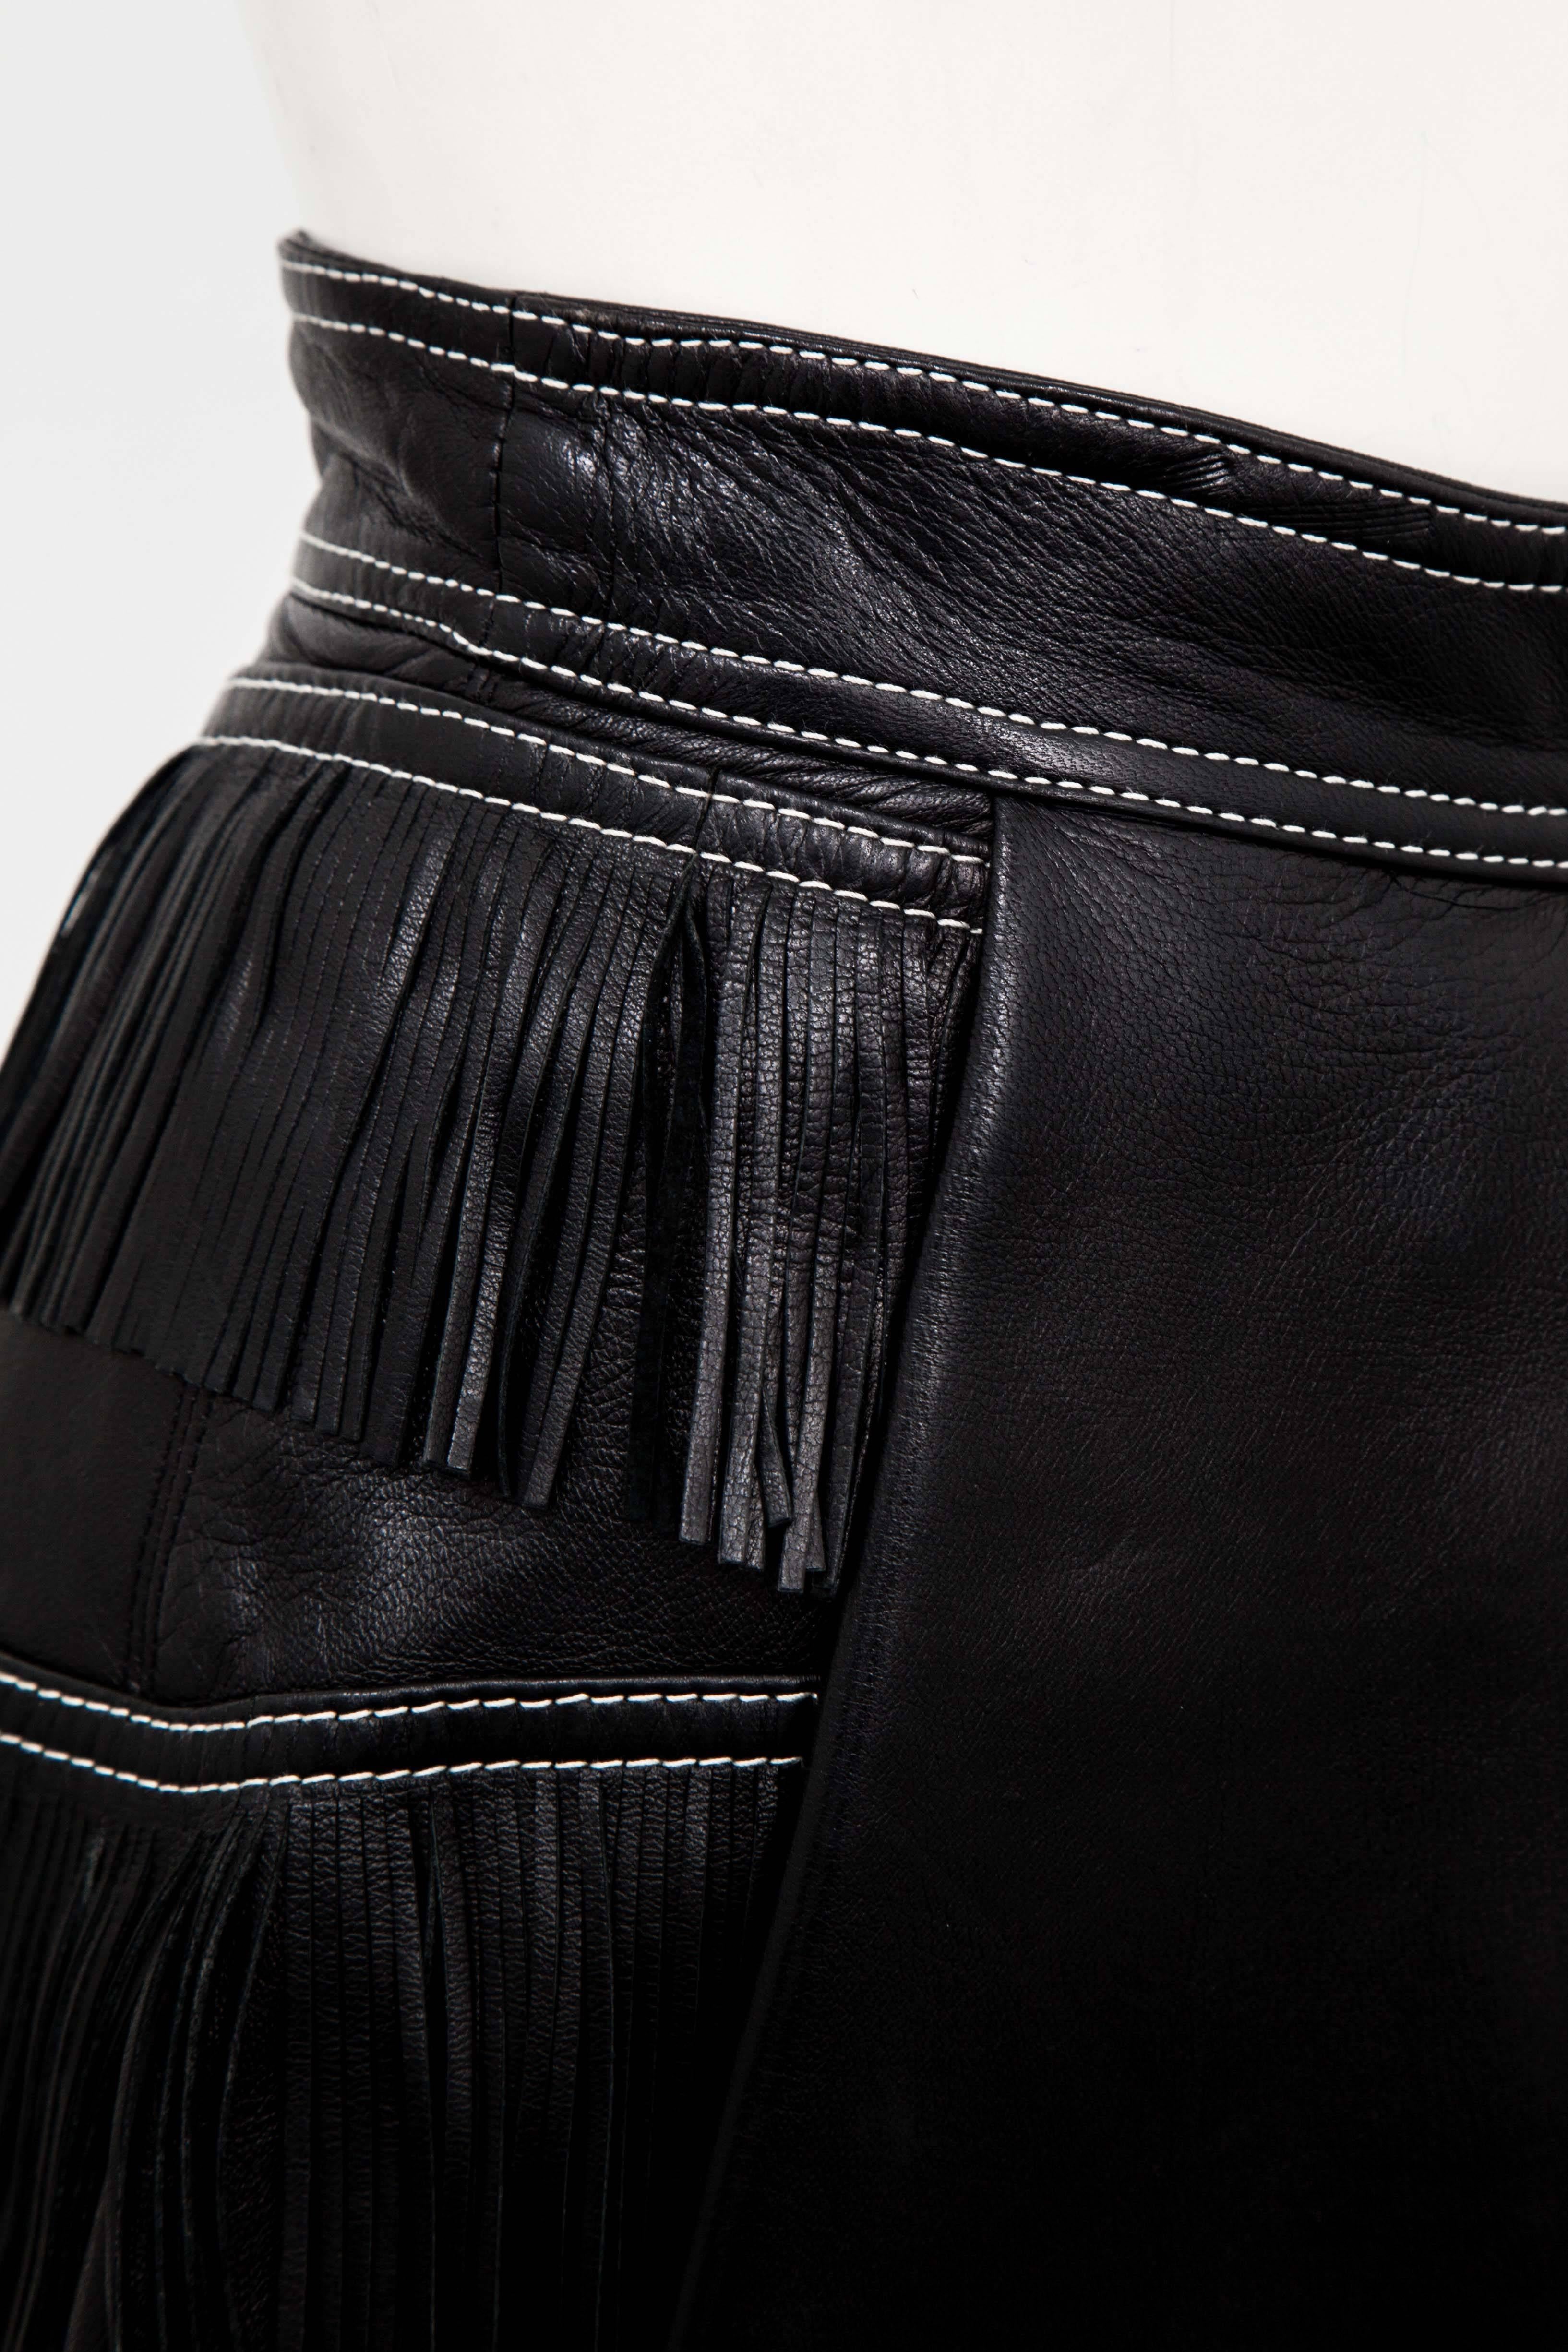 Gianni Versace Iconic 1992 Runway Black Leather Fringe Skirt 2